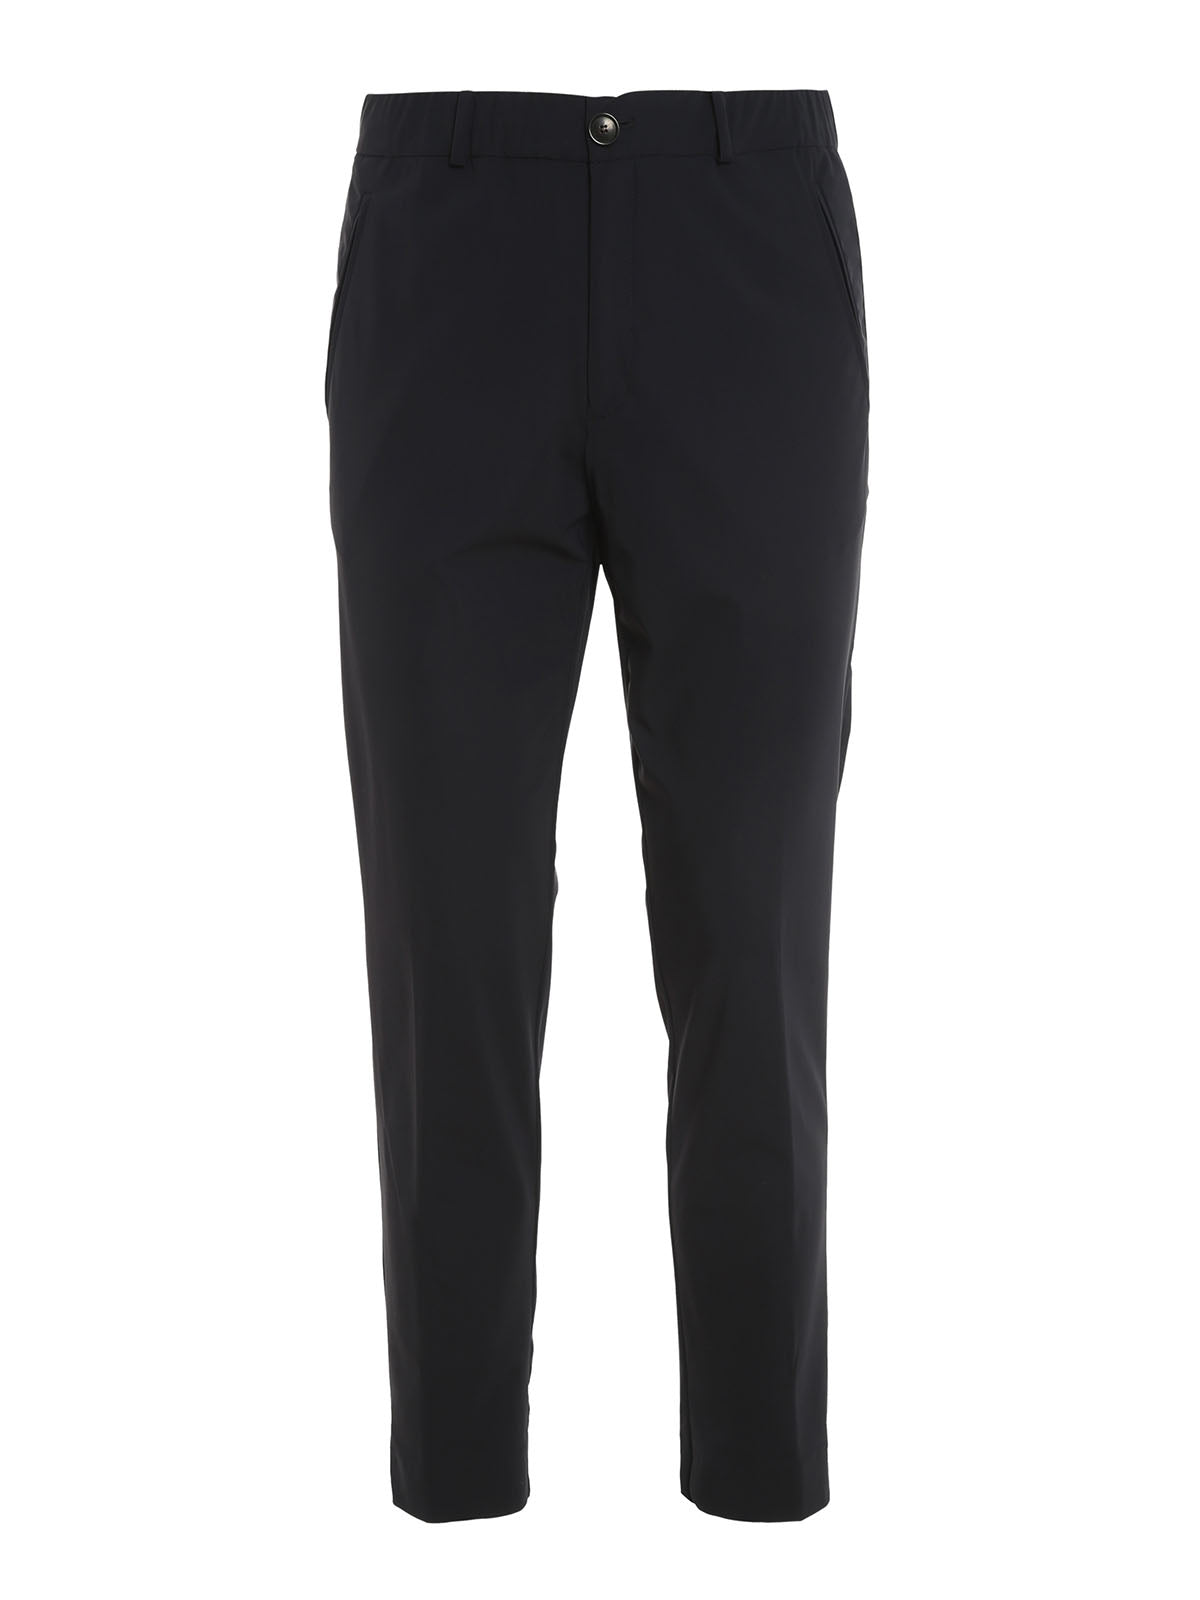 Pantalone con Coulisse / Nero - Ideal Moda